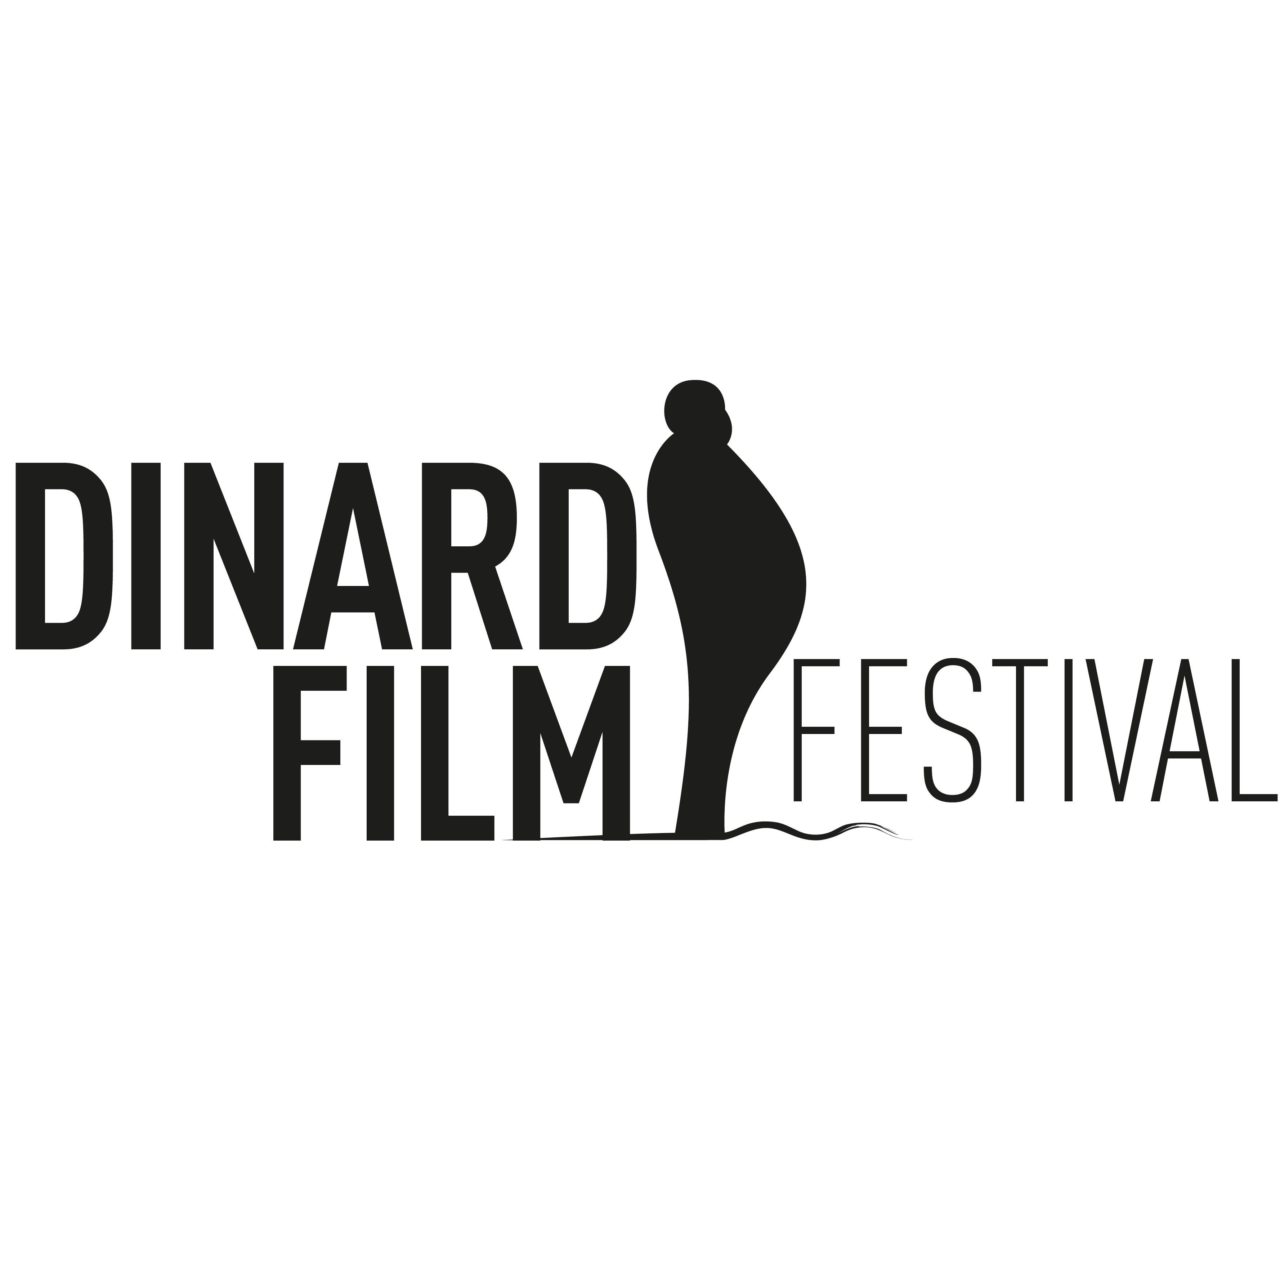 Dinard Film Festival 2020